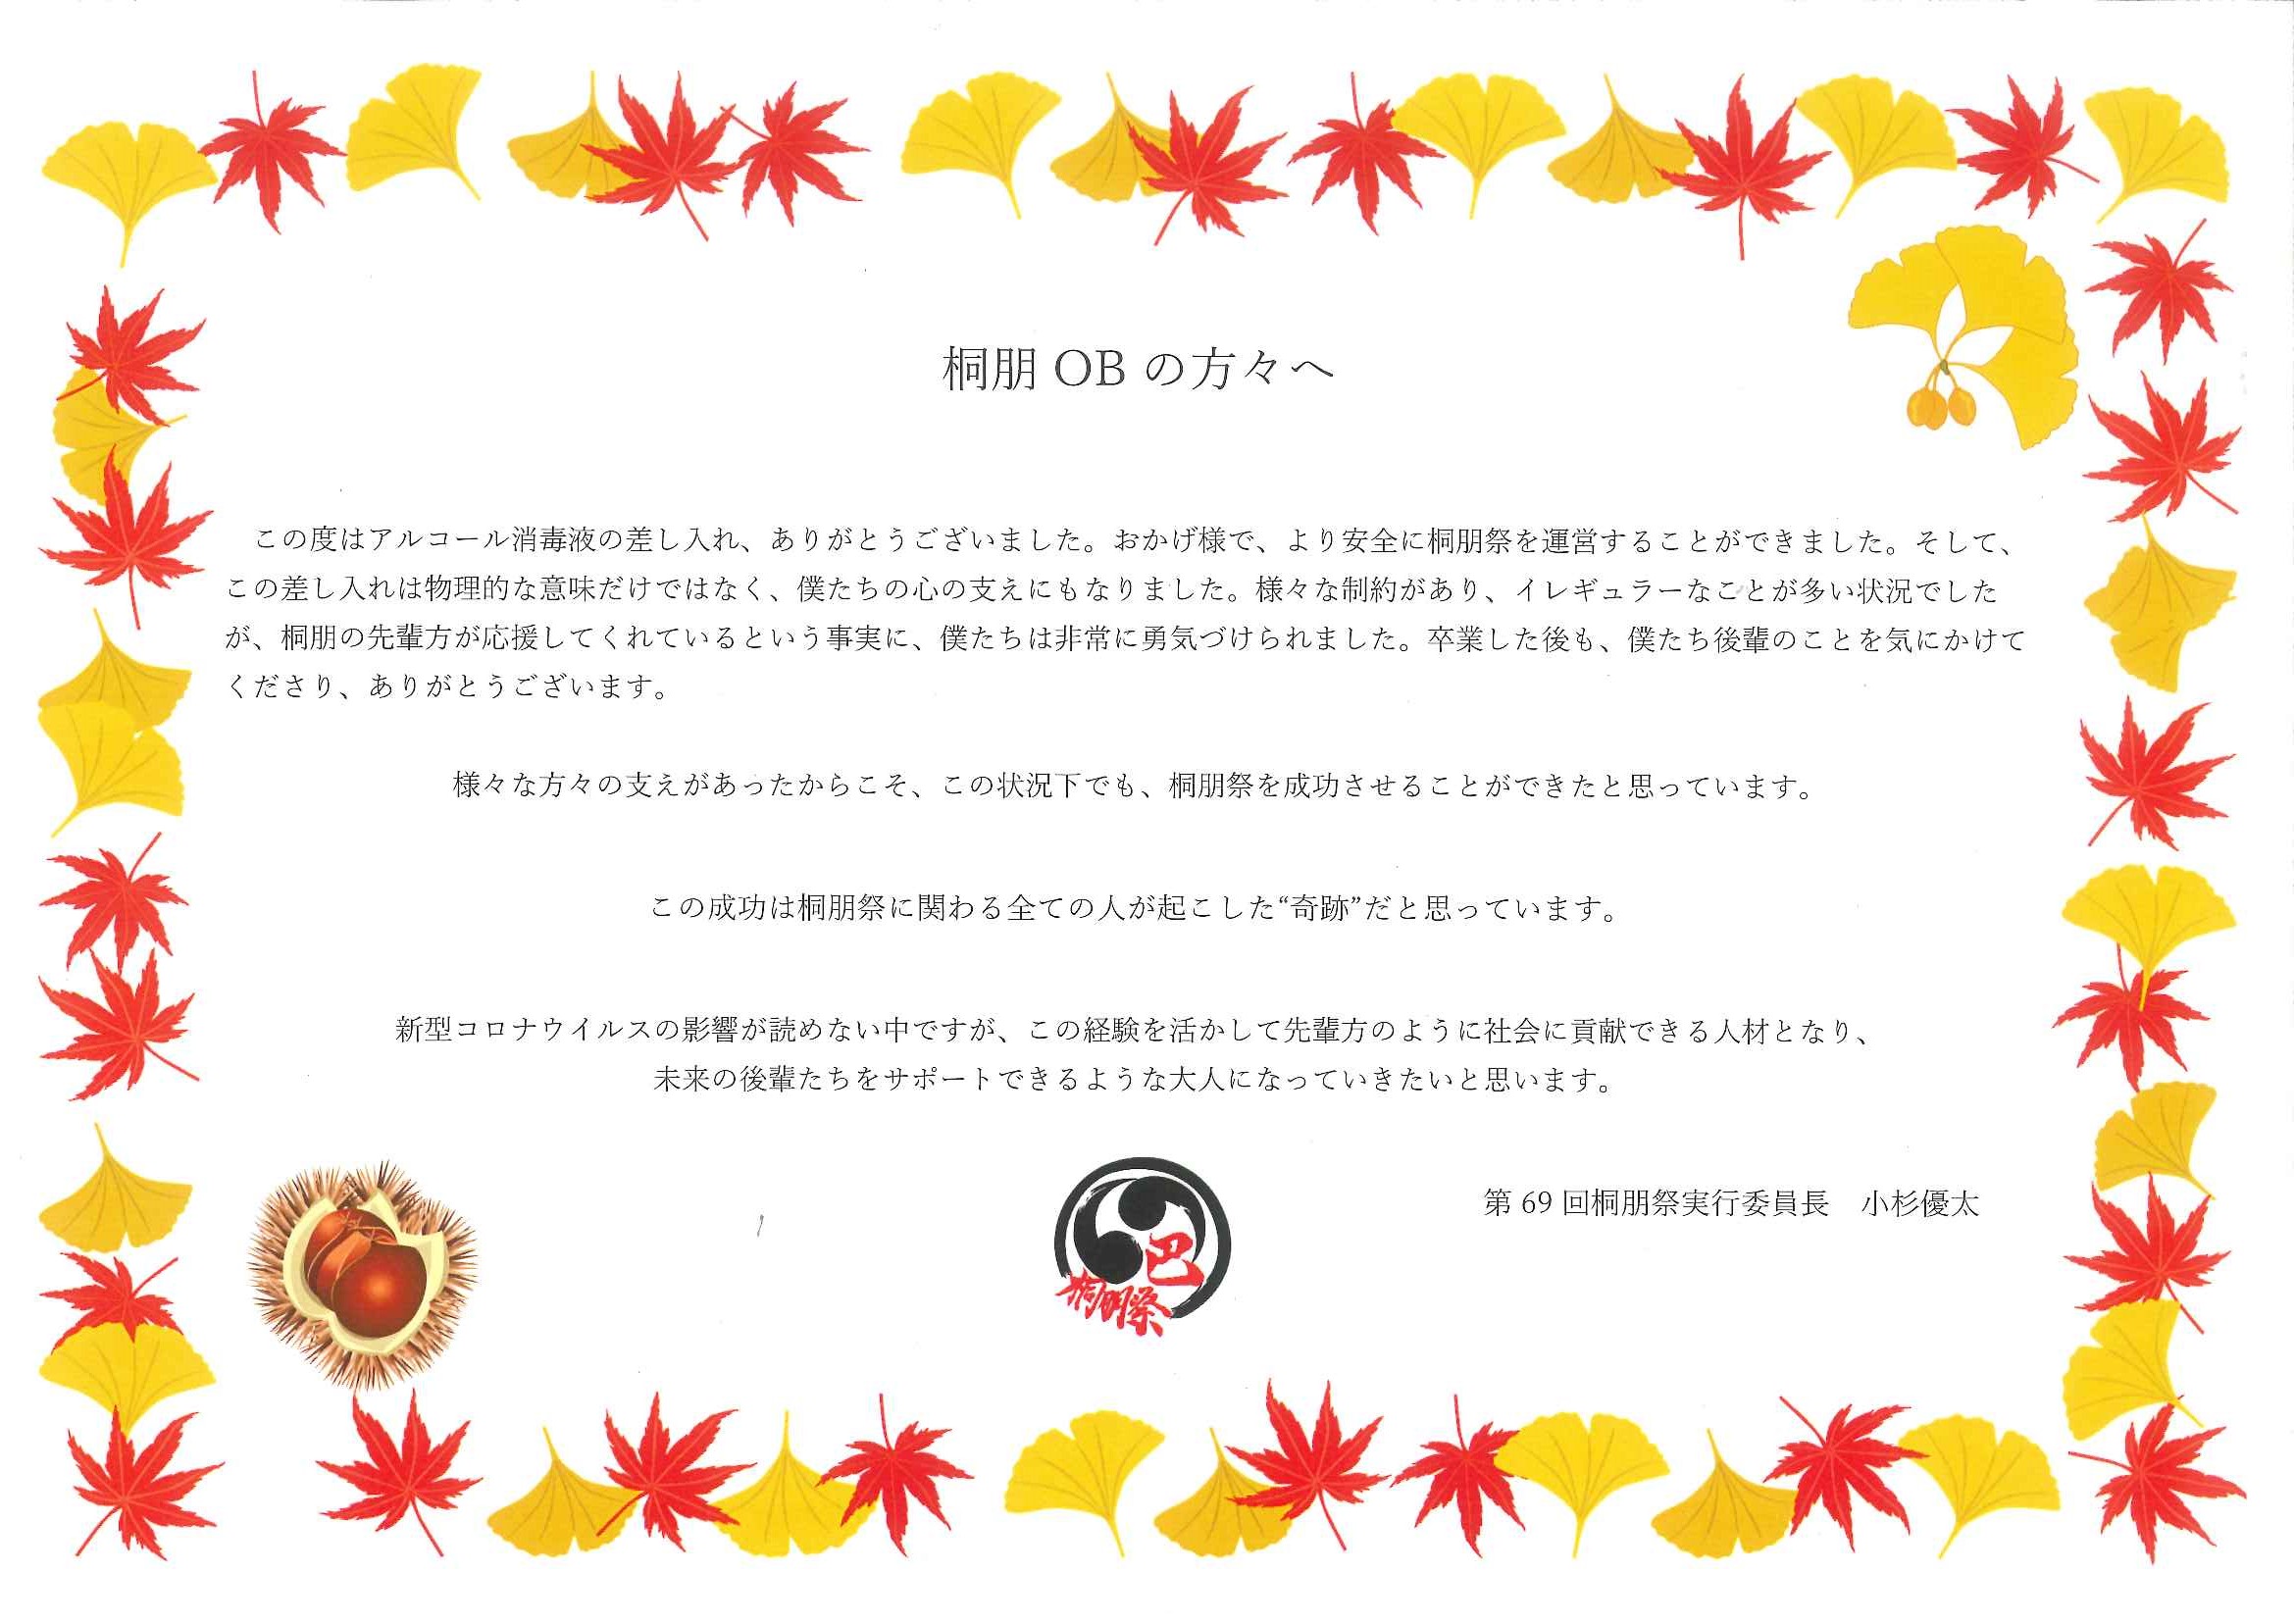 桐朋祭実行委員長よりお礼状が届きました